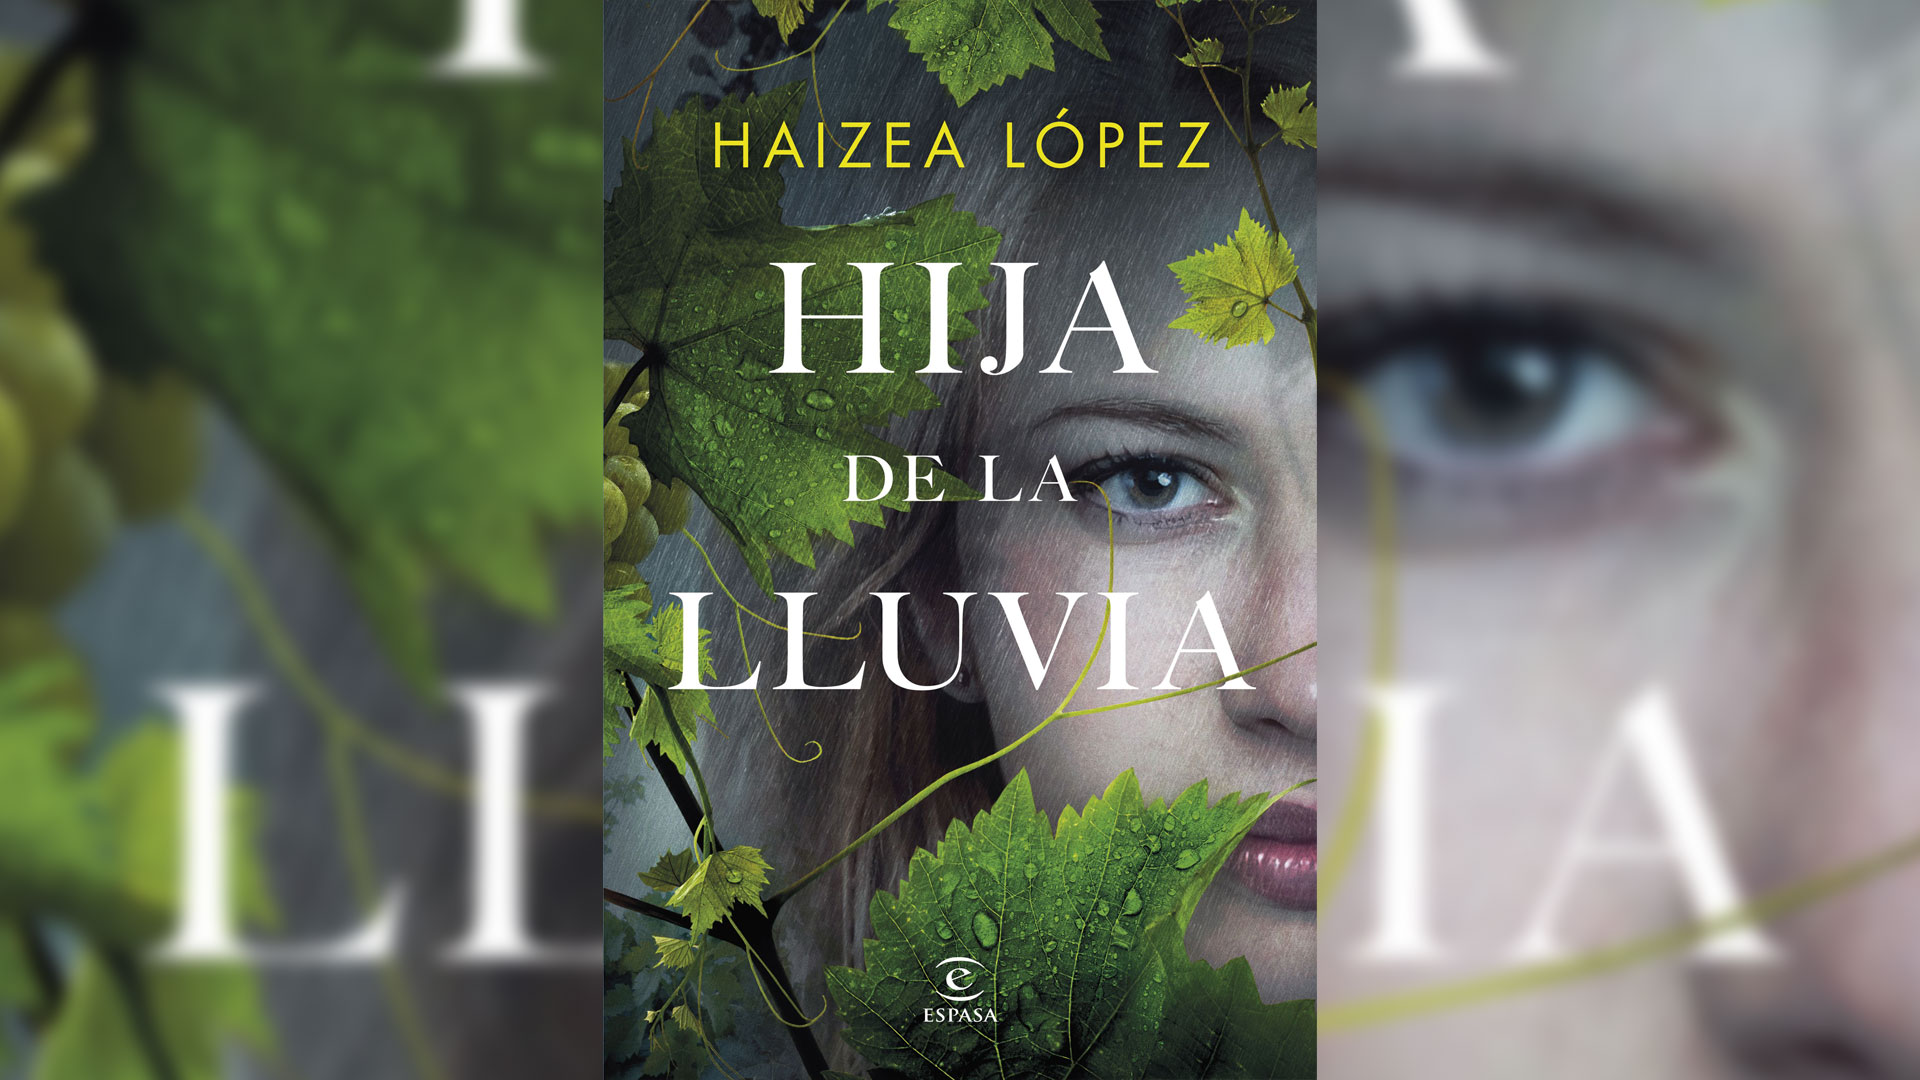 Tras más de un centenar de novelas, Haizea López deja atrás nuevamente su pseudónimo masculino y retoma su verdadera identidad